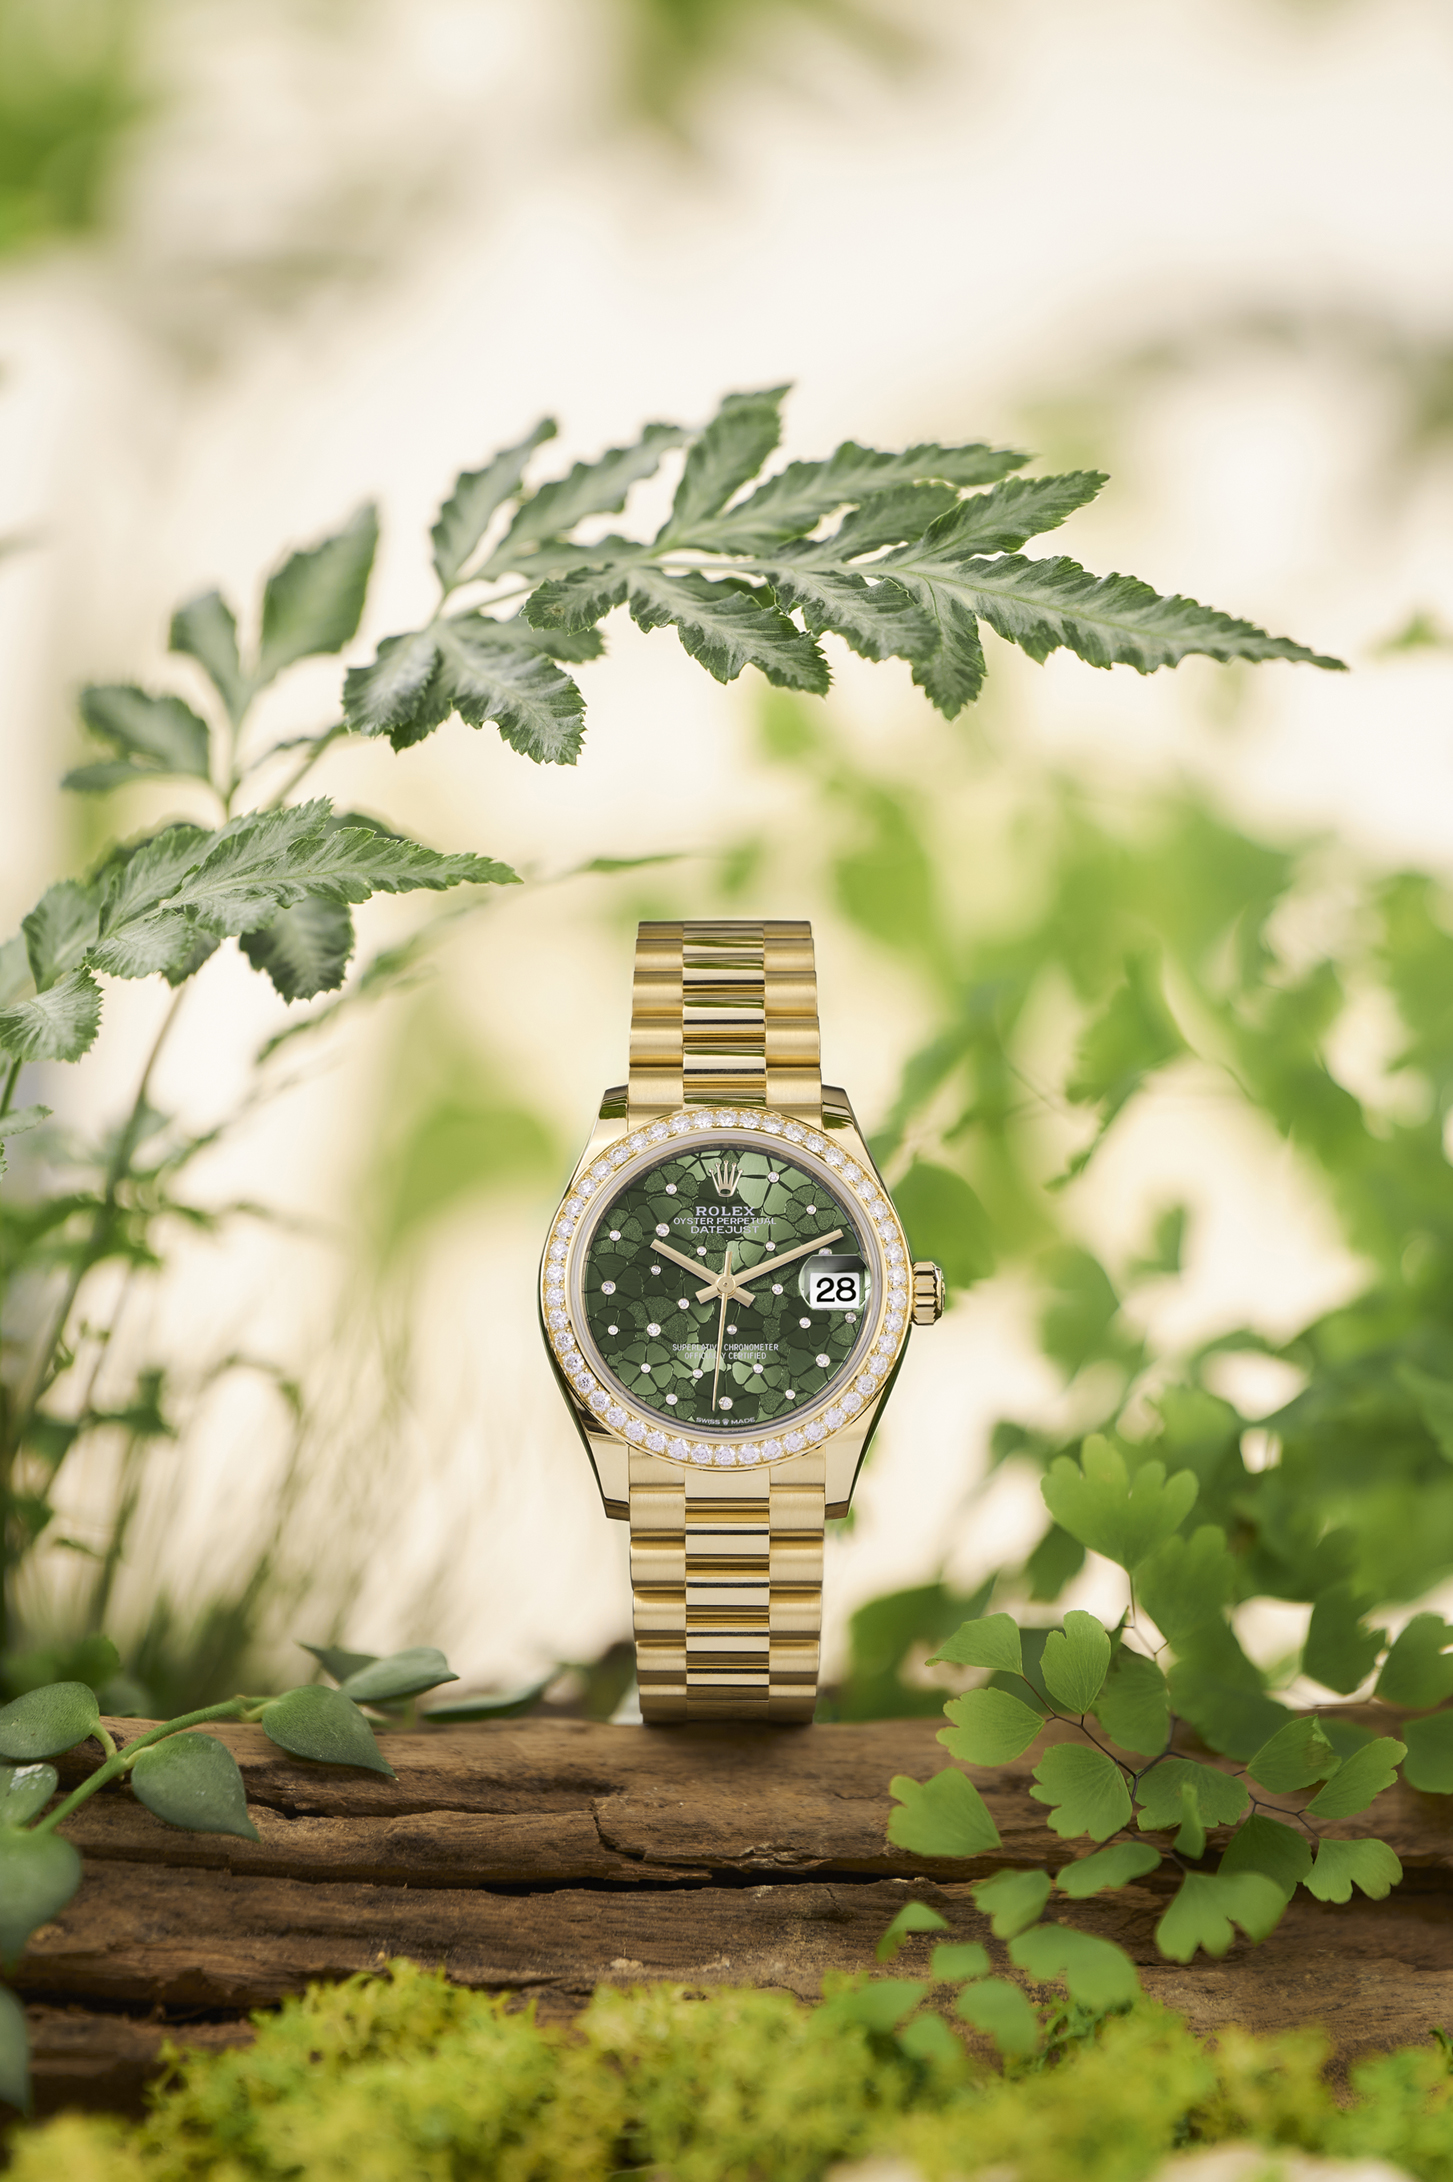 đồng hồ Datejust 31 phiên bản màu xanh olive